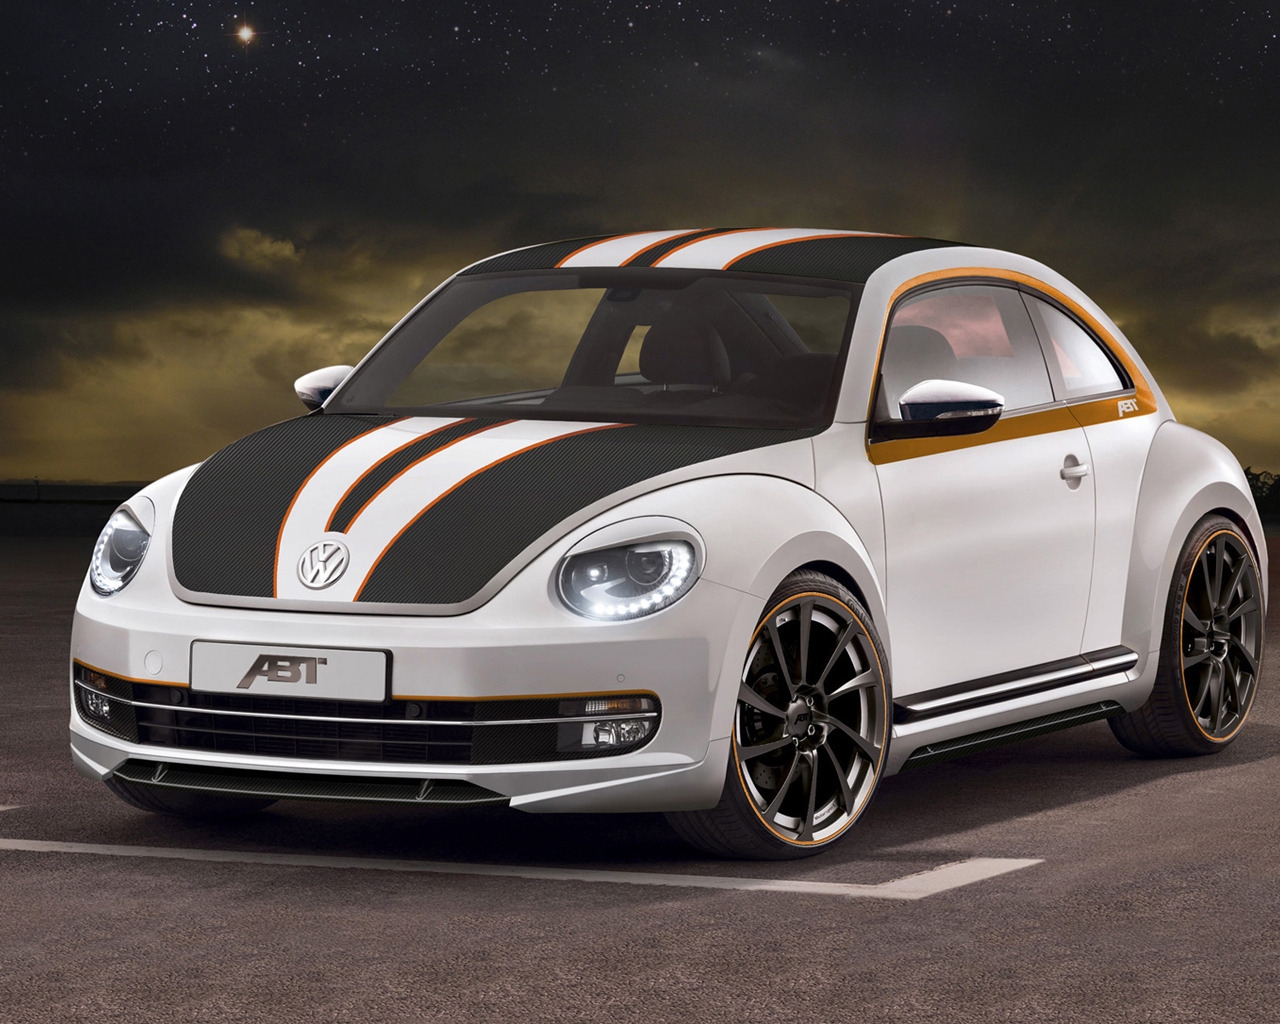 2012 ABT Volkswagen Beetle for 1280 x 1024 resolution